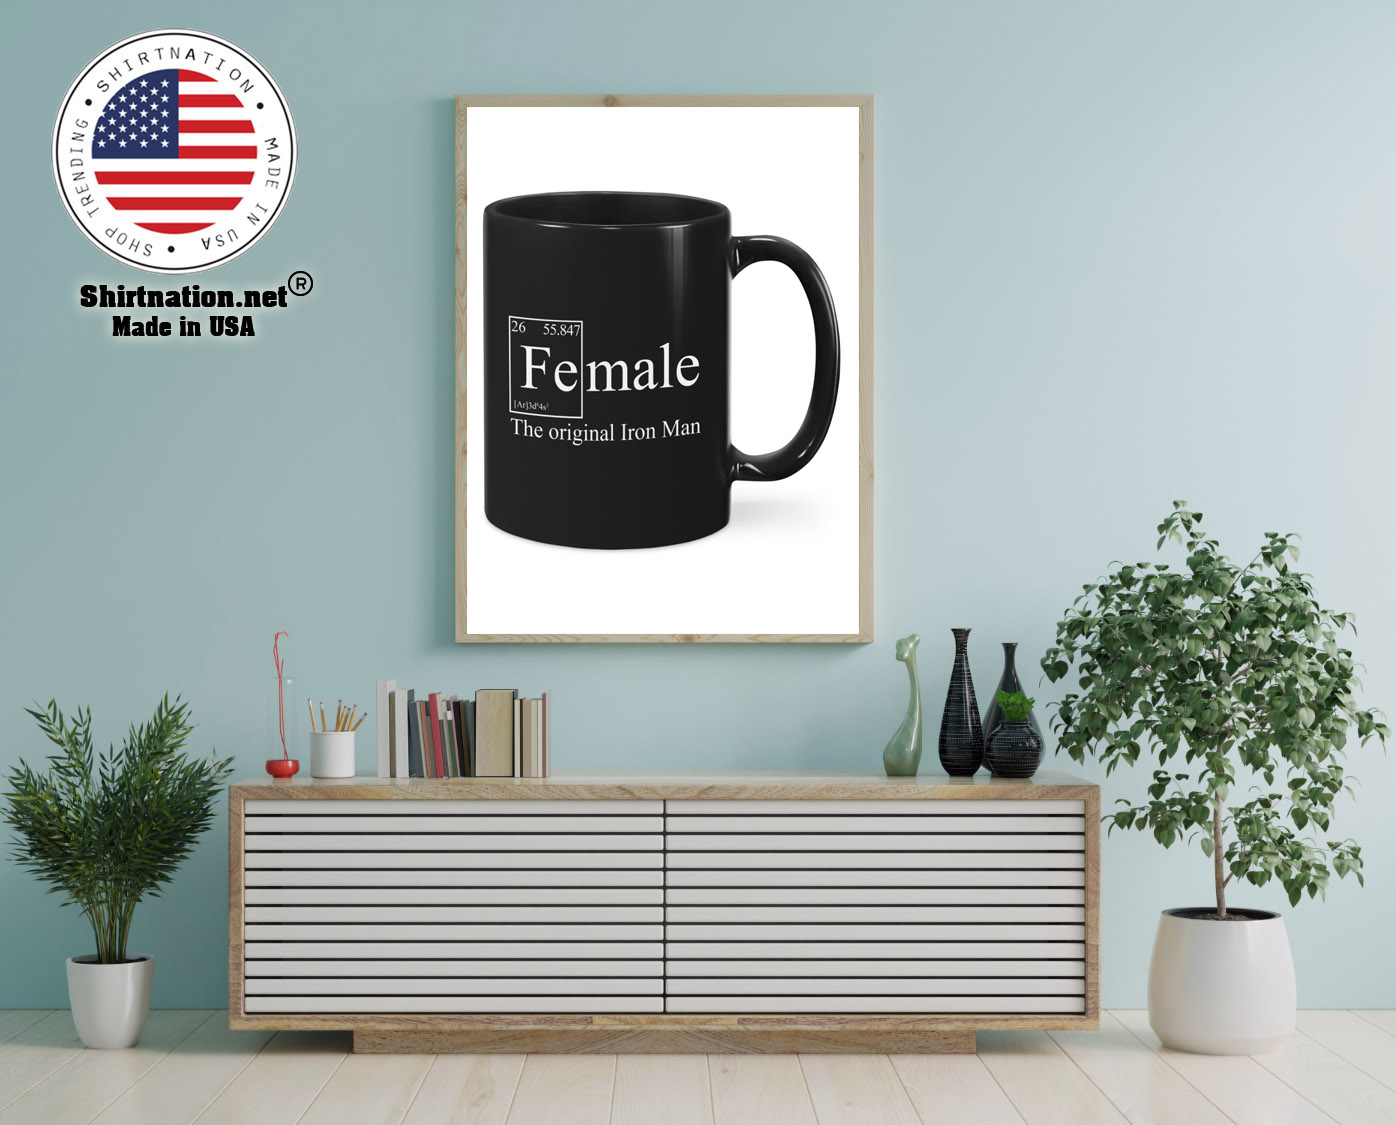 Female the original iron man mug 12 1